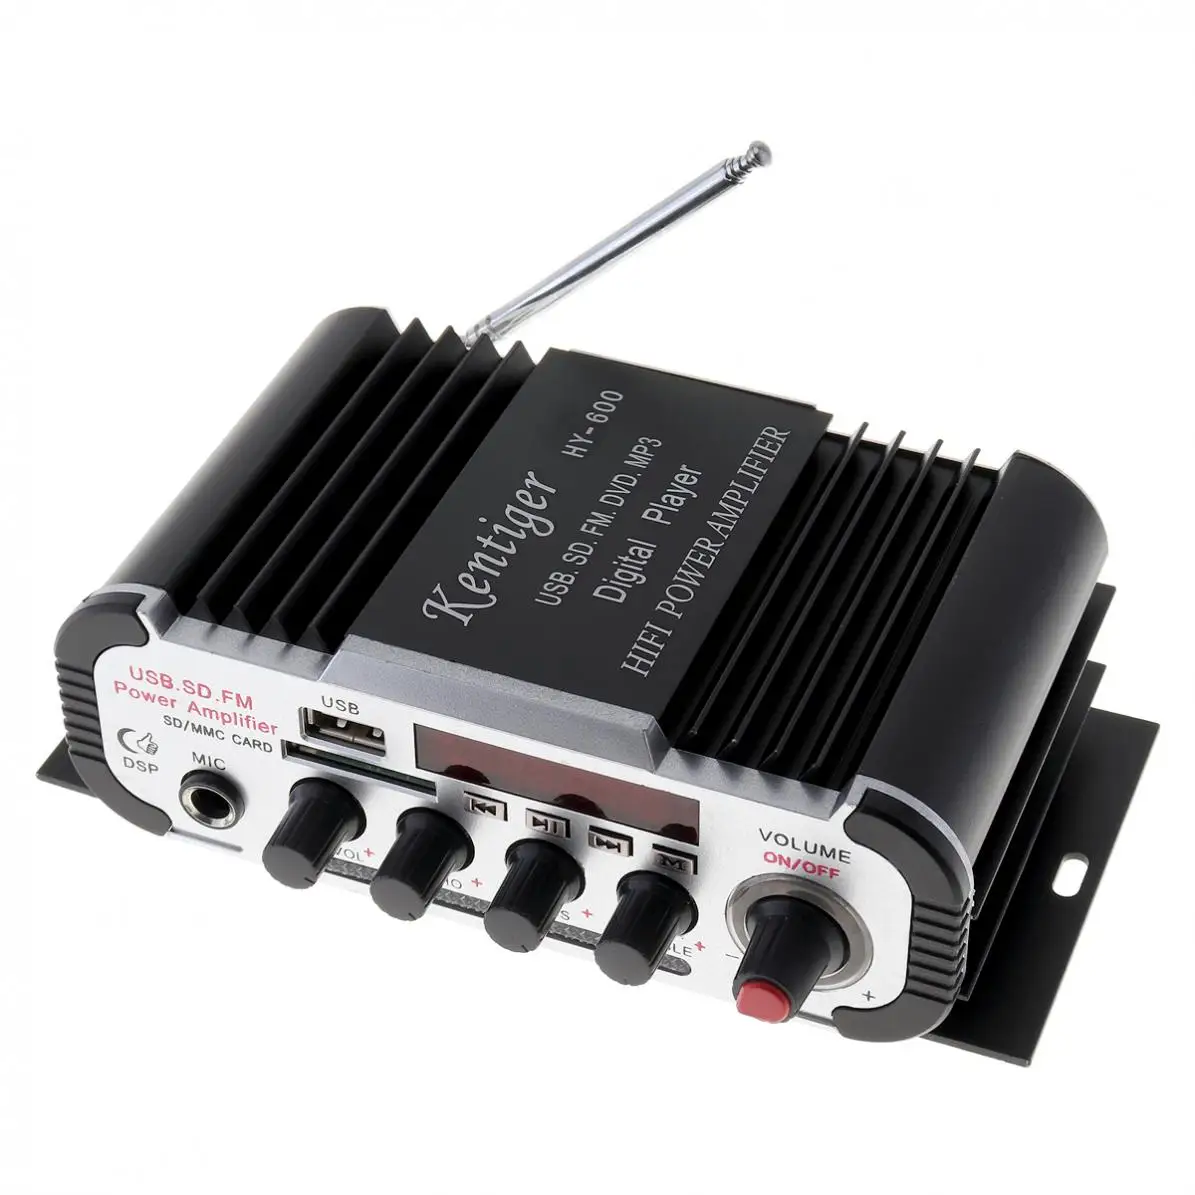 2CH Hi-Fi автомобильный аудио усилитель мощности fm-радио USB MP3 стерео цифровой плеер Поддержка U диск SD/MMC карты для автомобиля мотоцикла дома